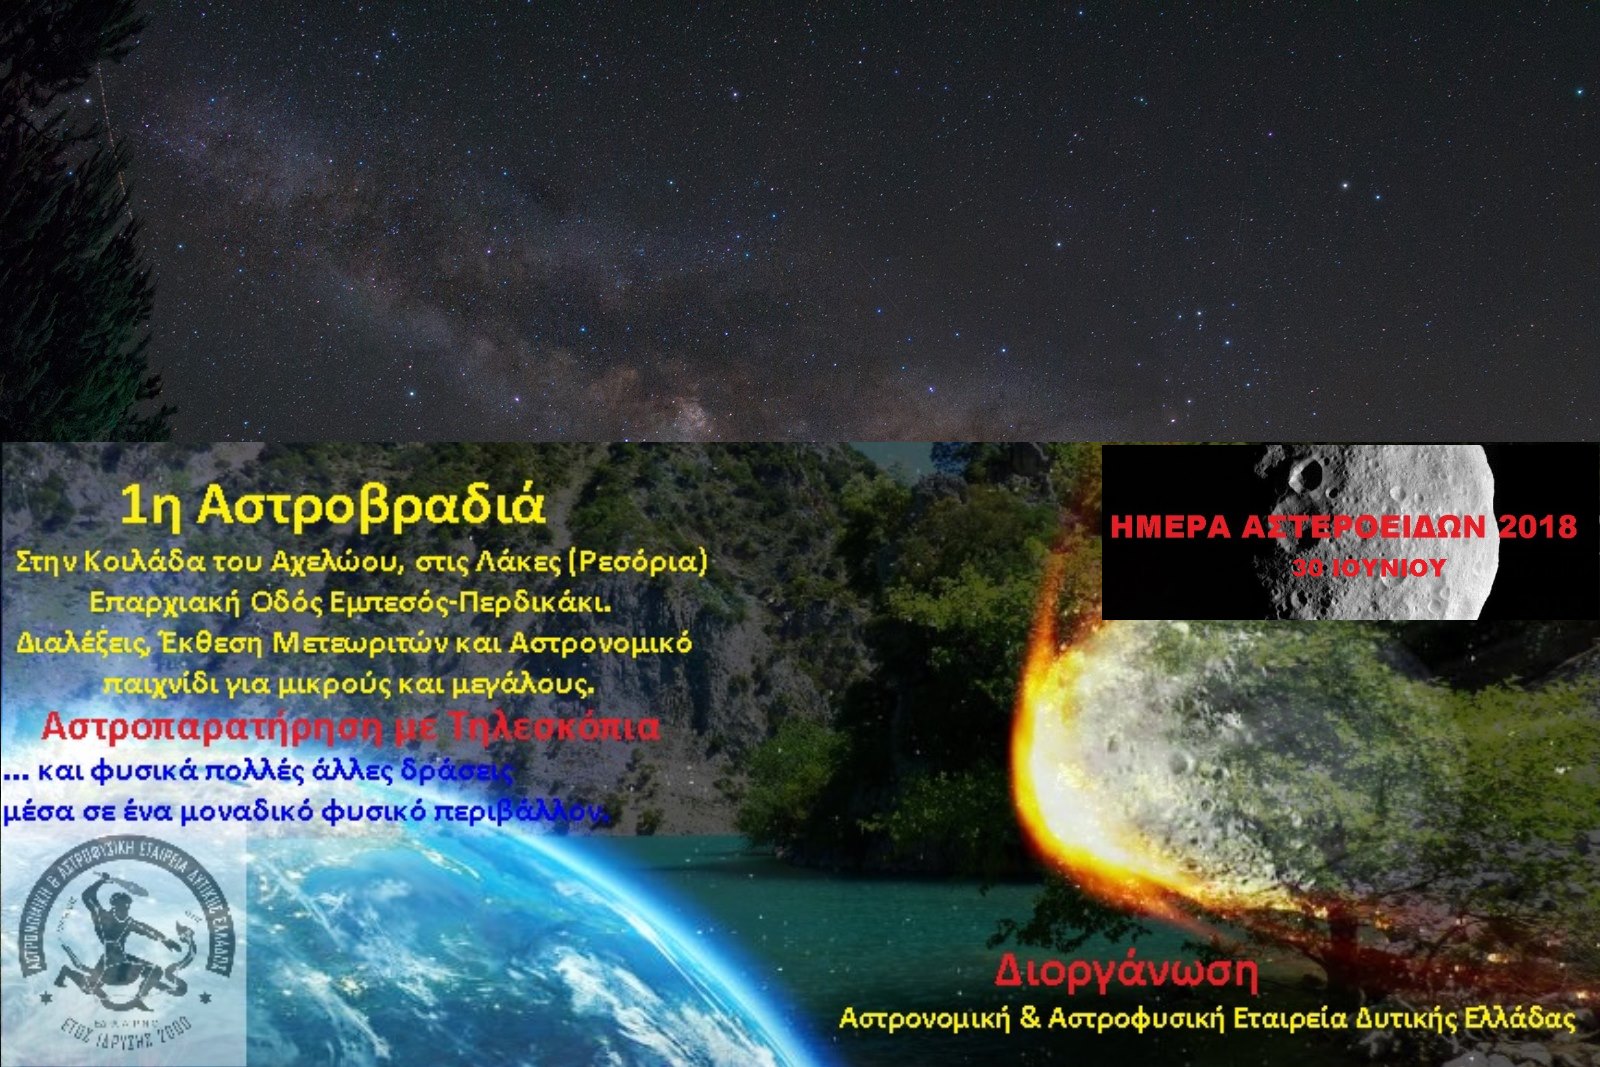 Αστρονομική & Αστροφυσική Εταιρεία Δυτικής Ελλάδας - 1η Αστροβραδιά